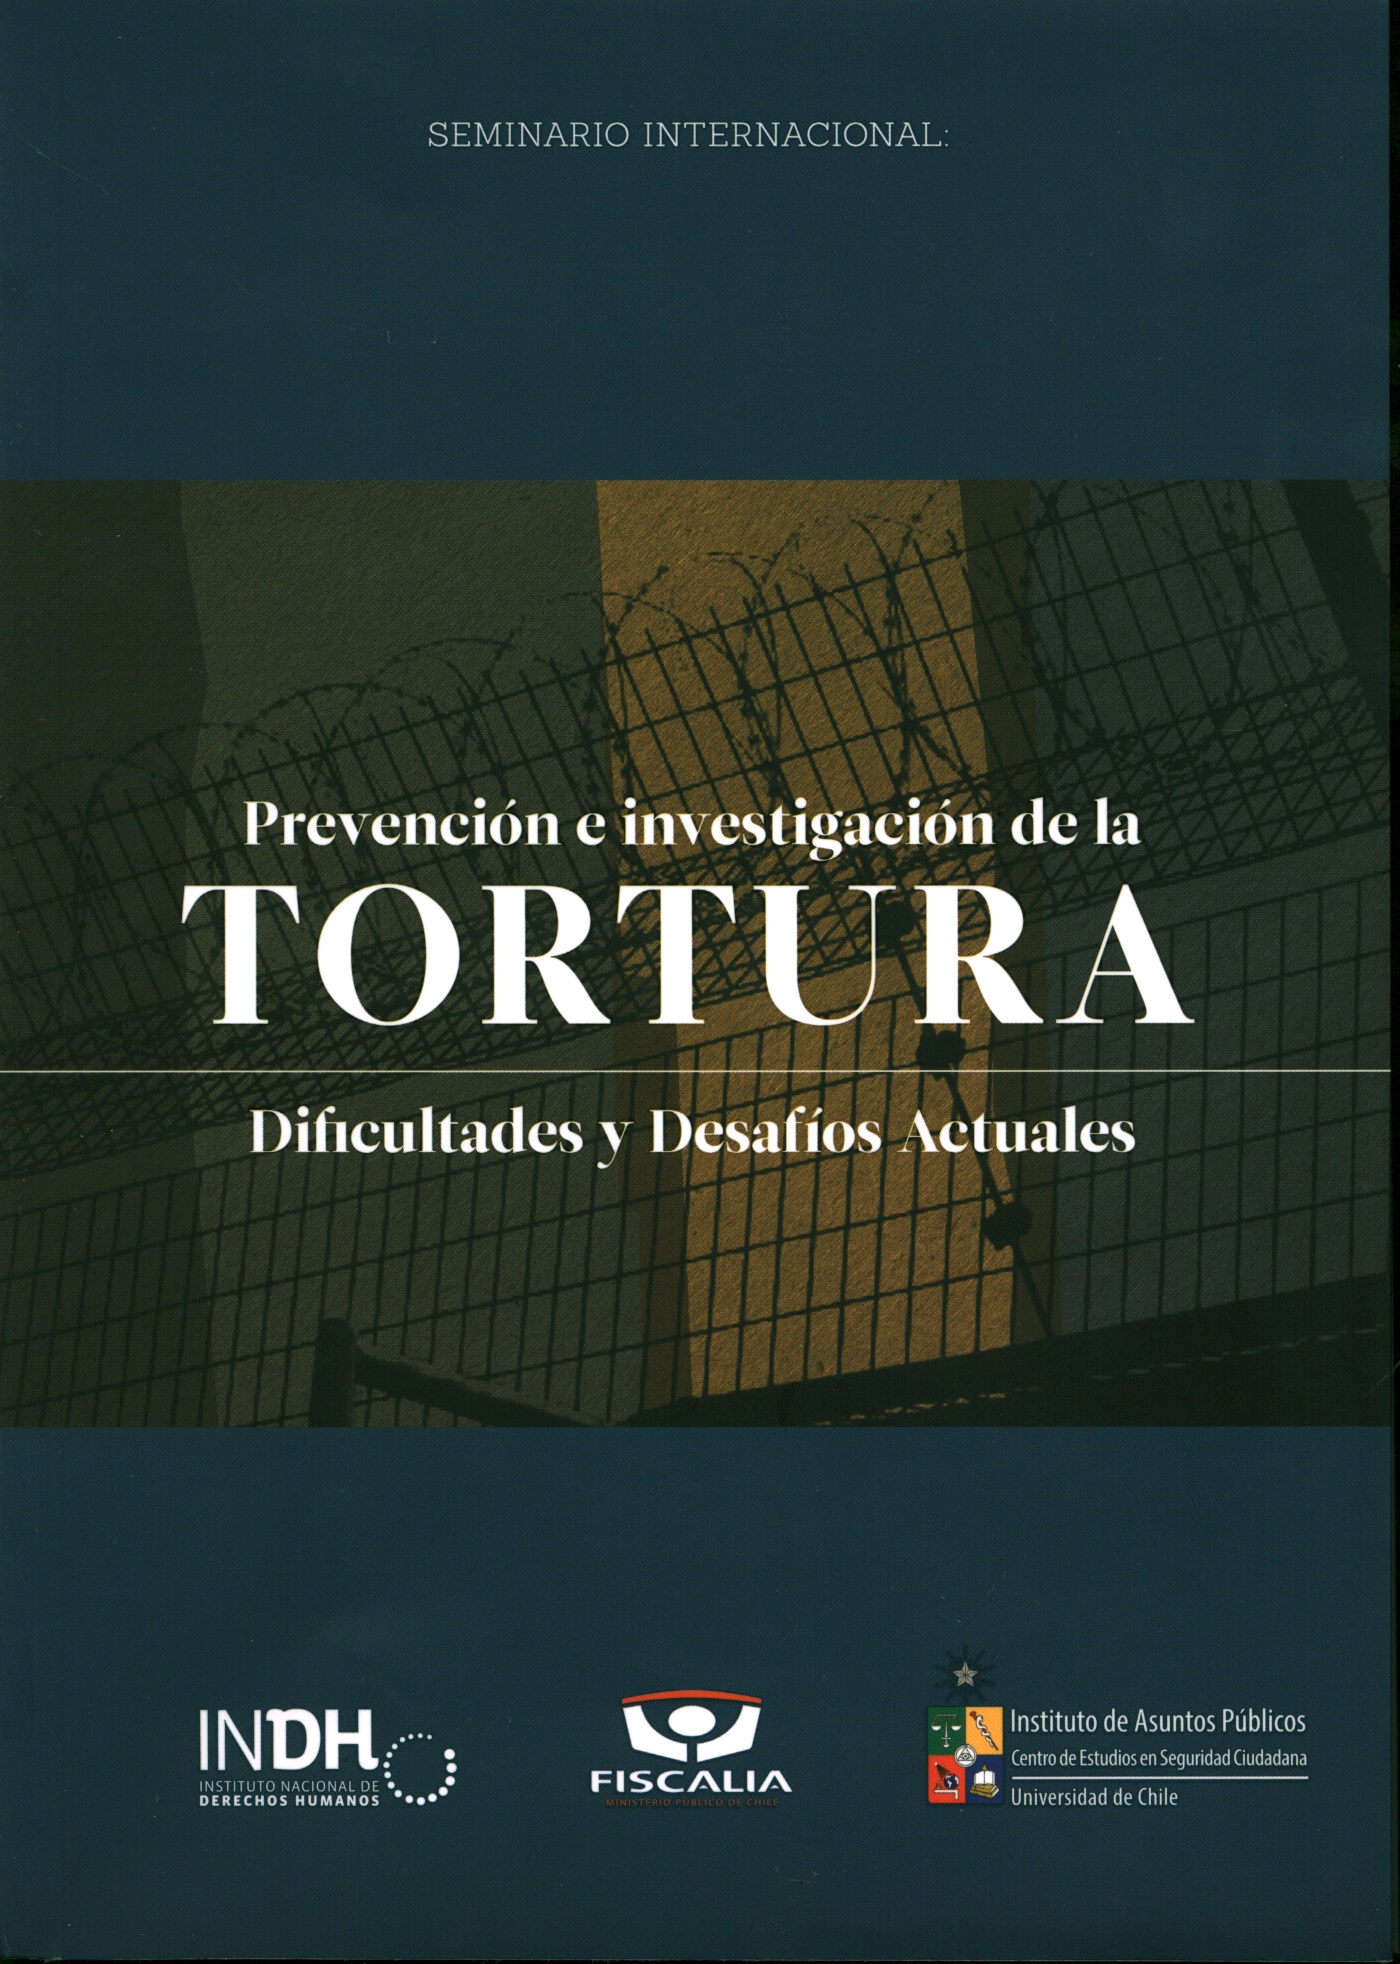 Seminario Internacional sobre prevención e investigación de la tortura: dificultades y desafíos actuales. 4 de Septiembre de 2014, Santiago de Chile